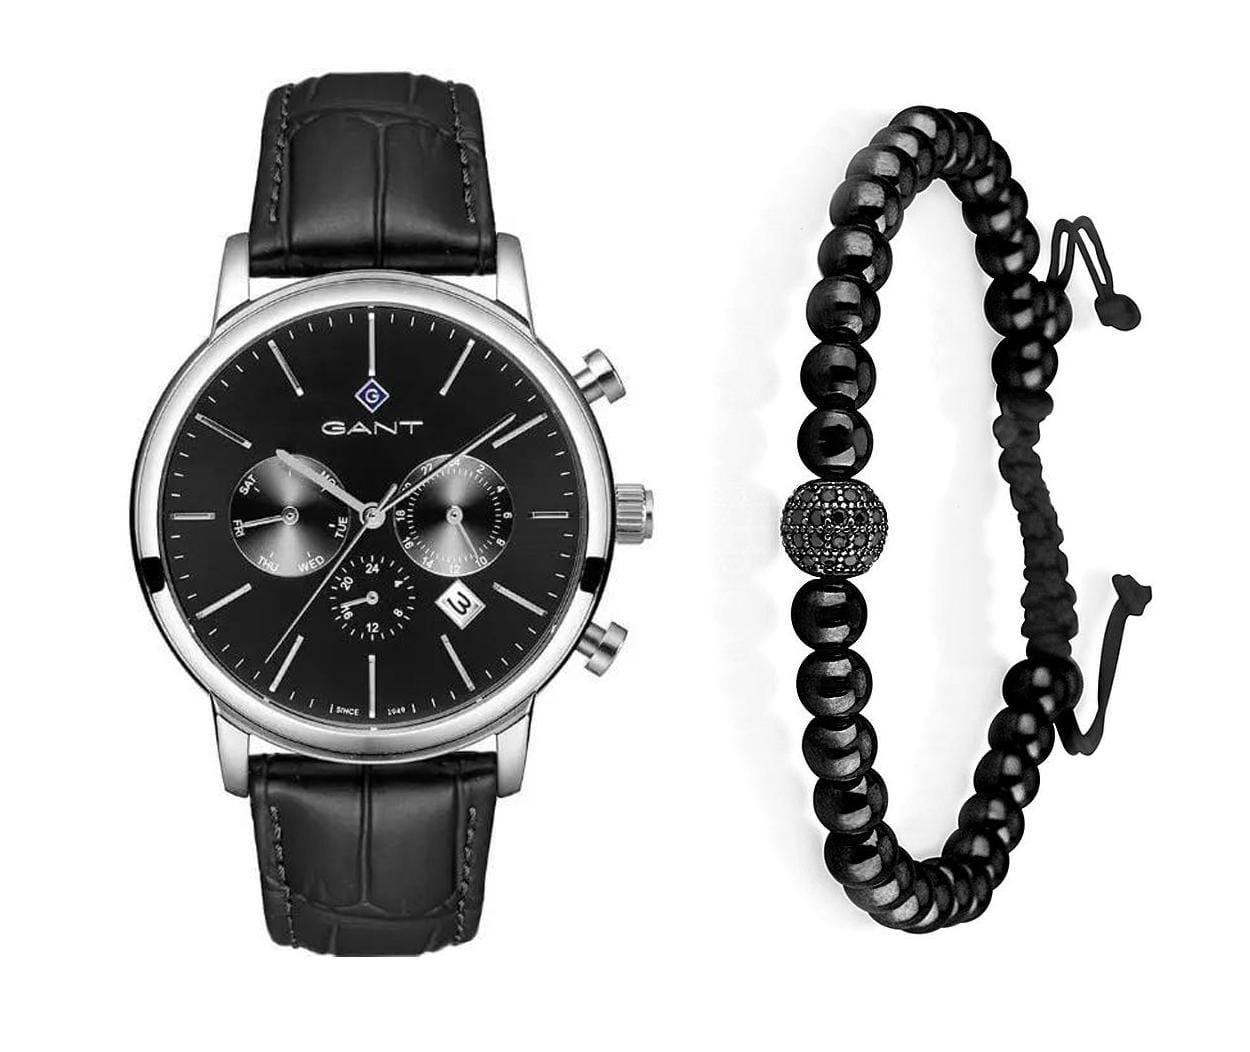 שעון יד אנלוגי לגבר gant g132006 גאנט עם צמיד כדורים שחור